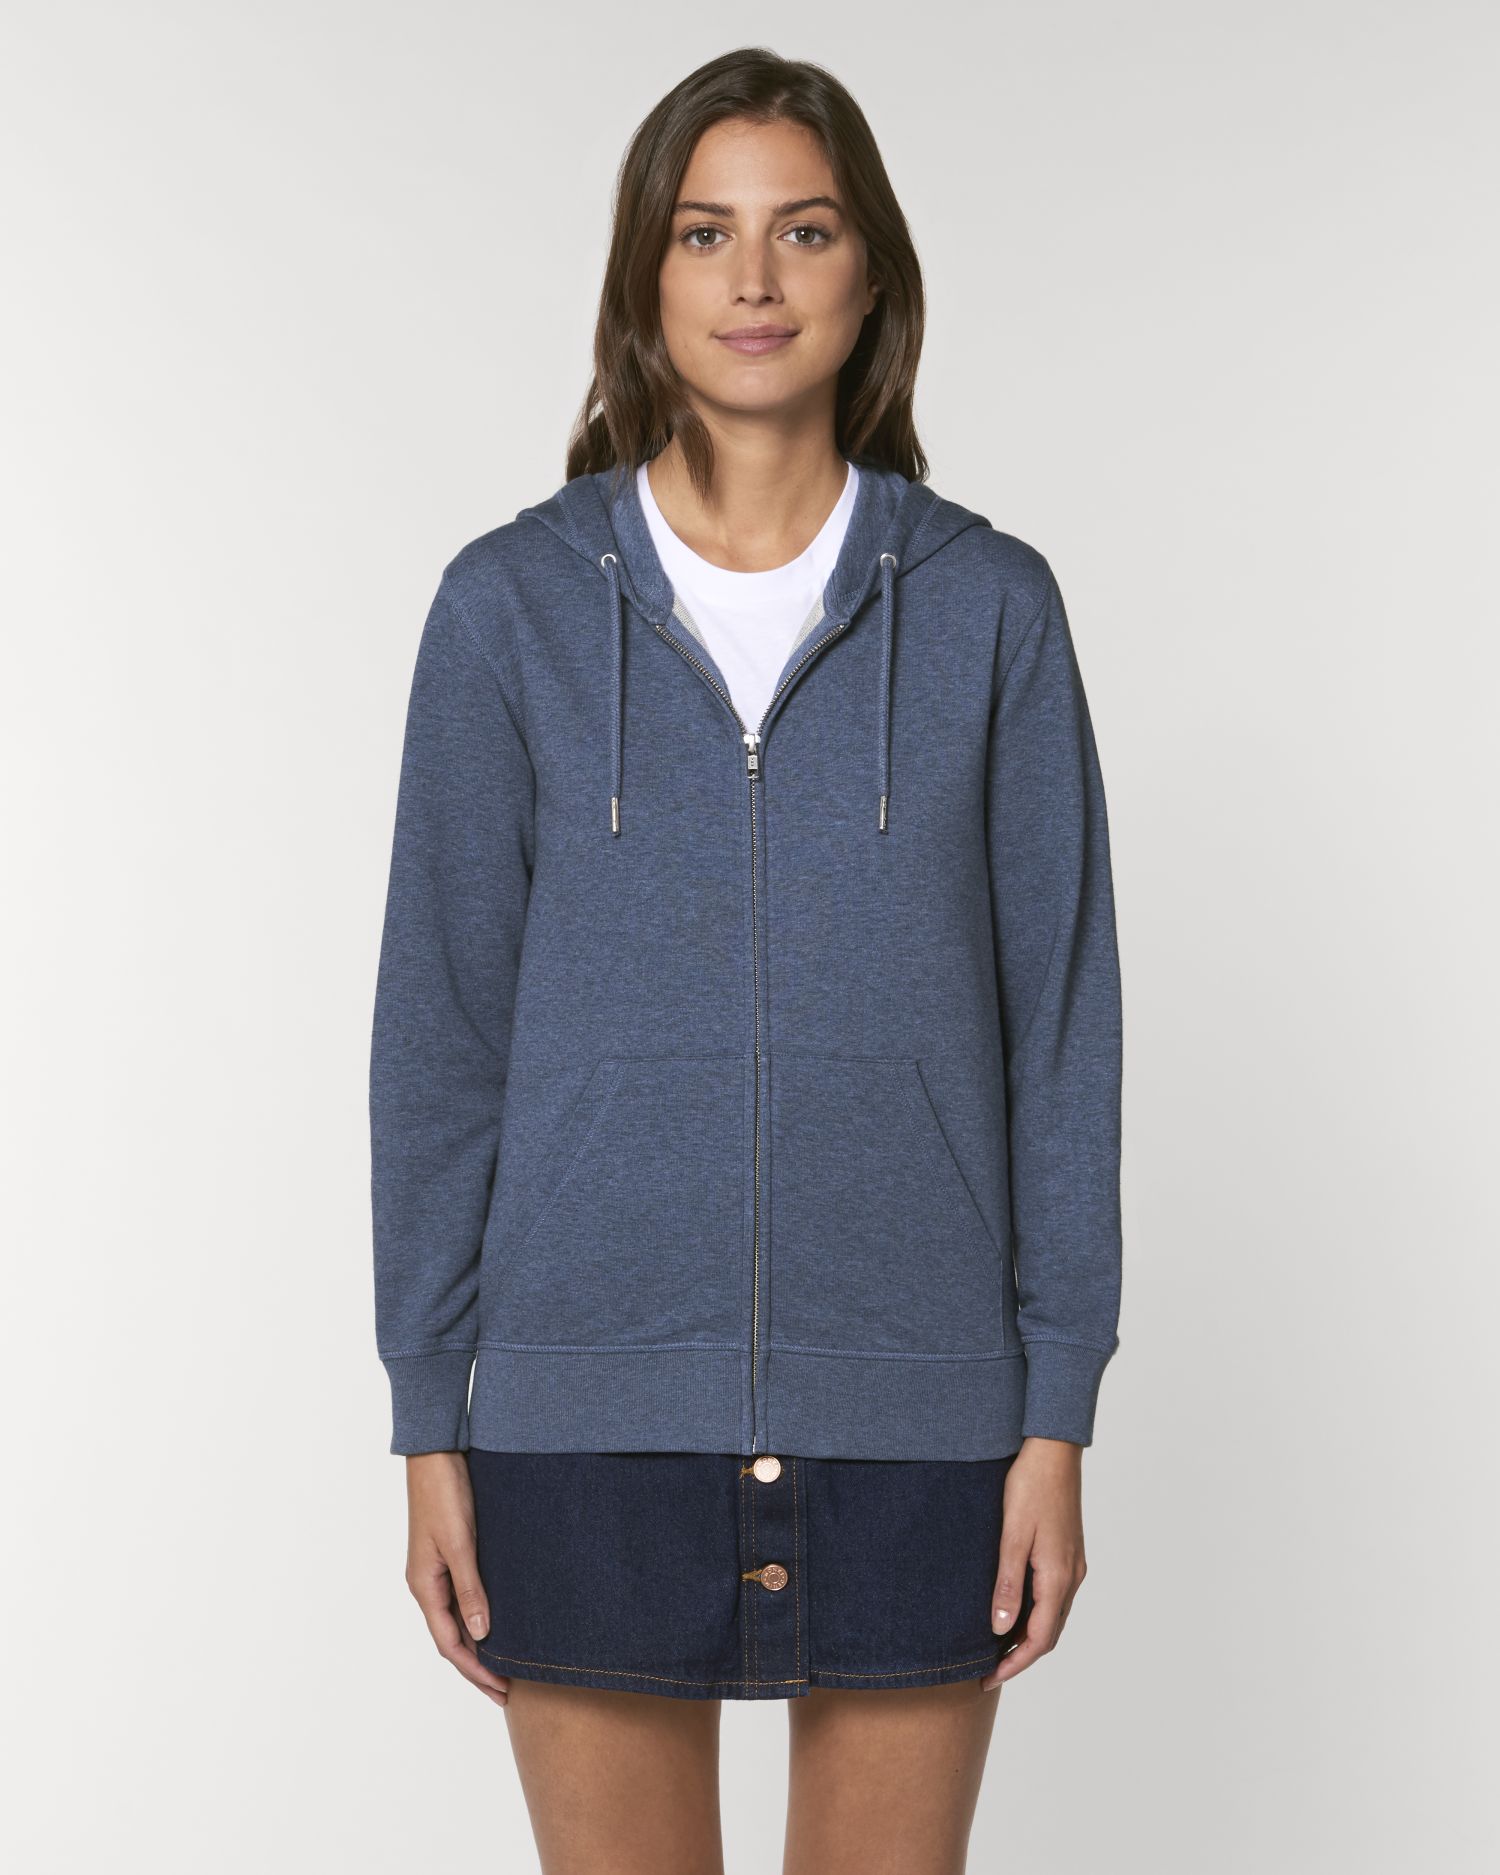 Zip-thru sweatshirts Connector in Farbe Dark Heather Blue